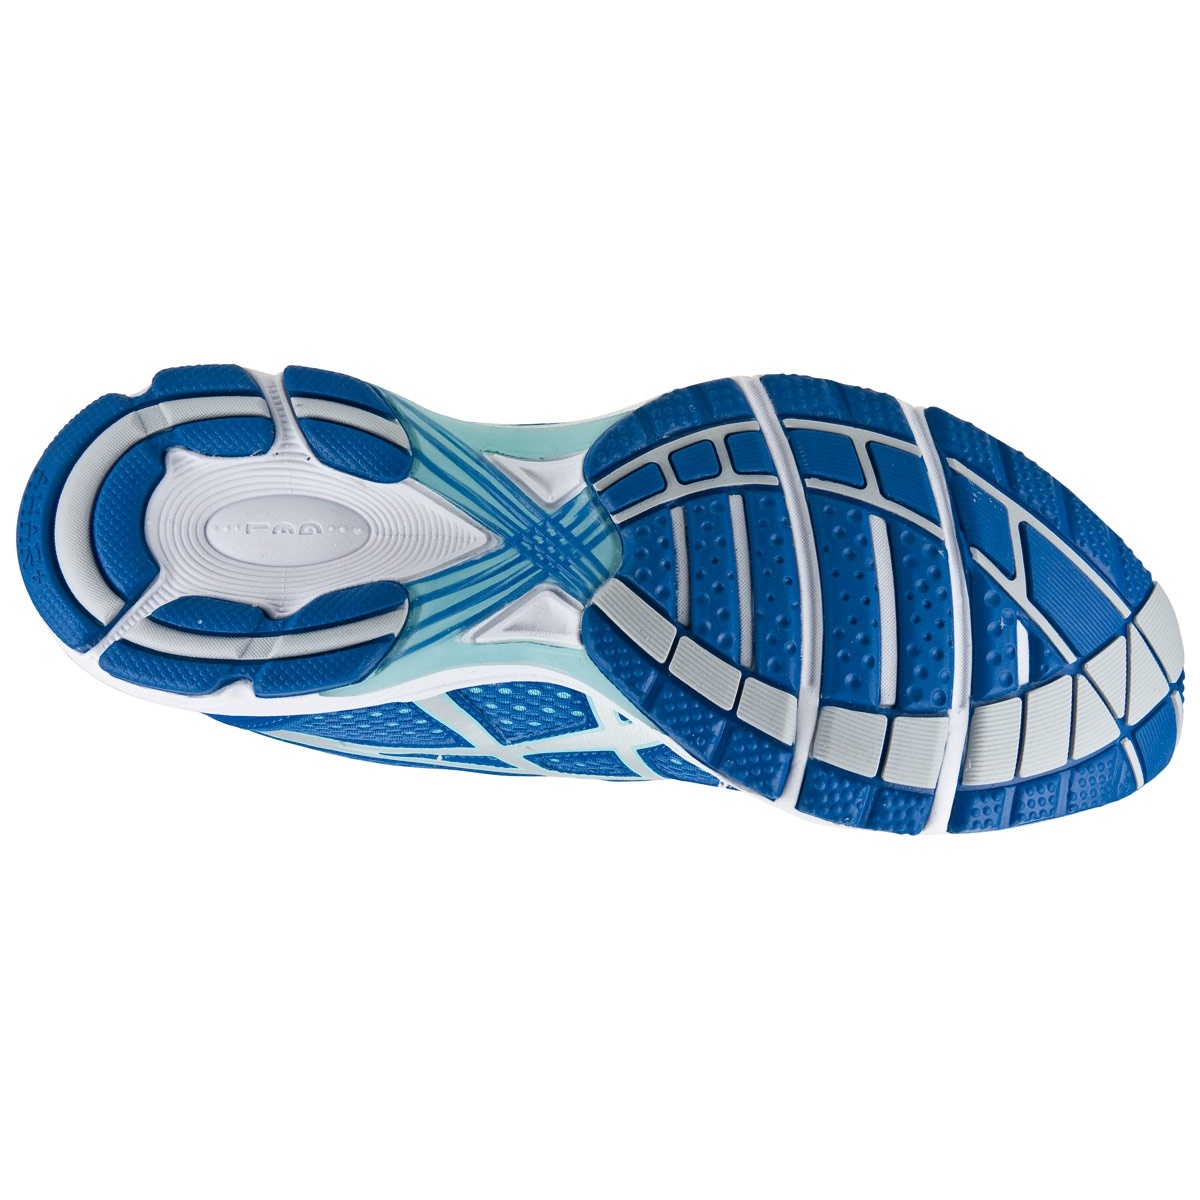 Купить спортивная обувь ASICS AYAMI-ILLUSION (T2H6N-6093) в "Звезда Олимпа". Модные и функциональные беговые кроссовки для женщин ASICS AYAMI-ILLUSION - заказать с доставкой по РФ.